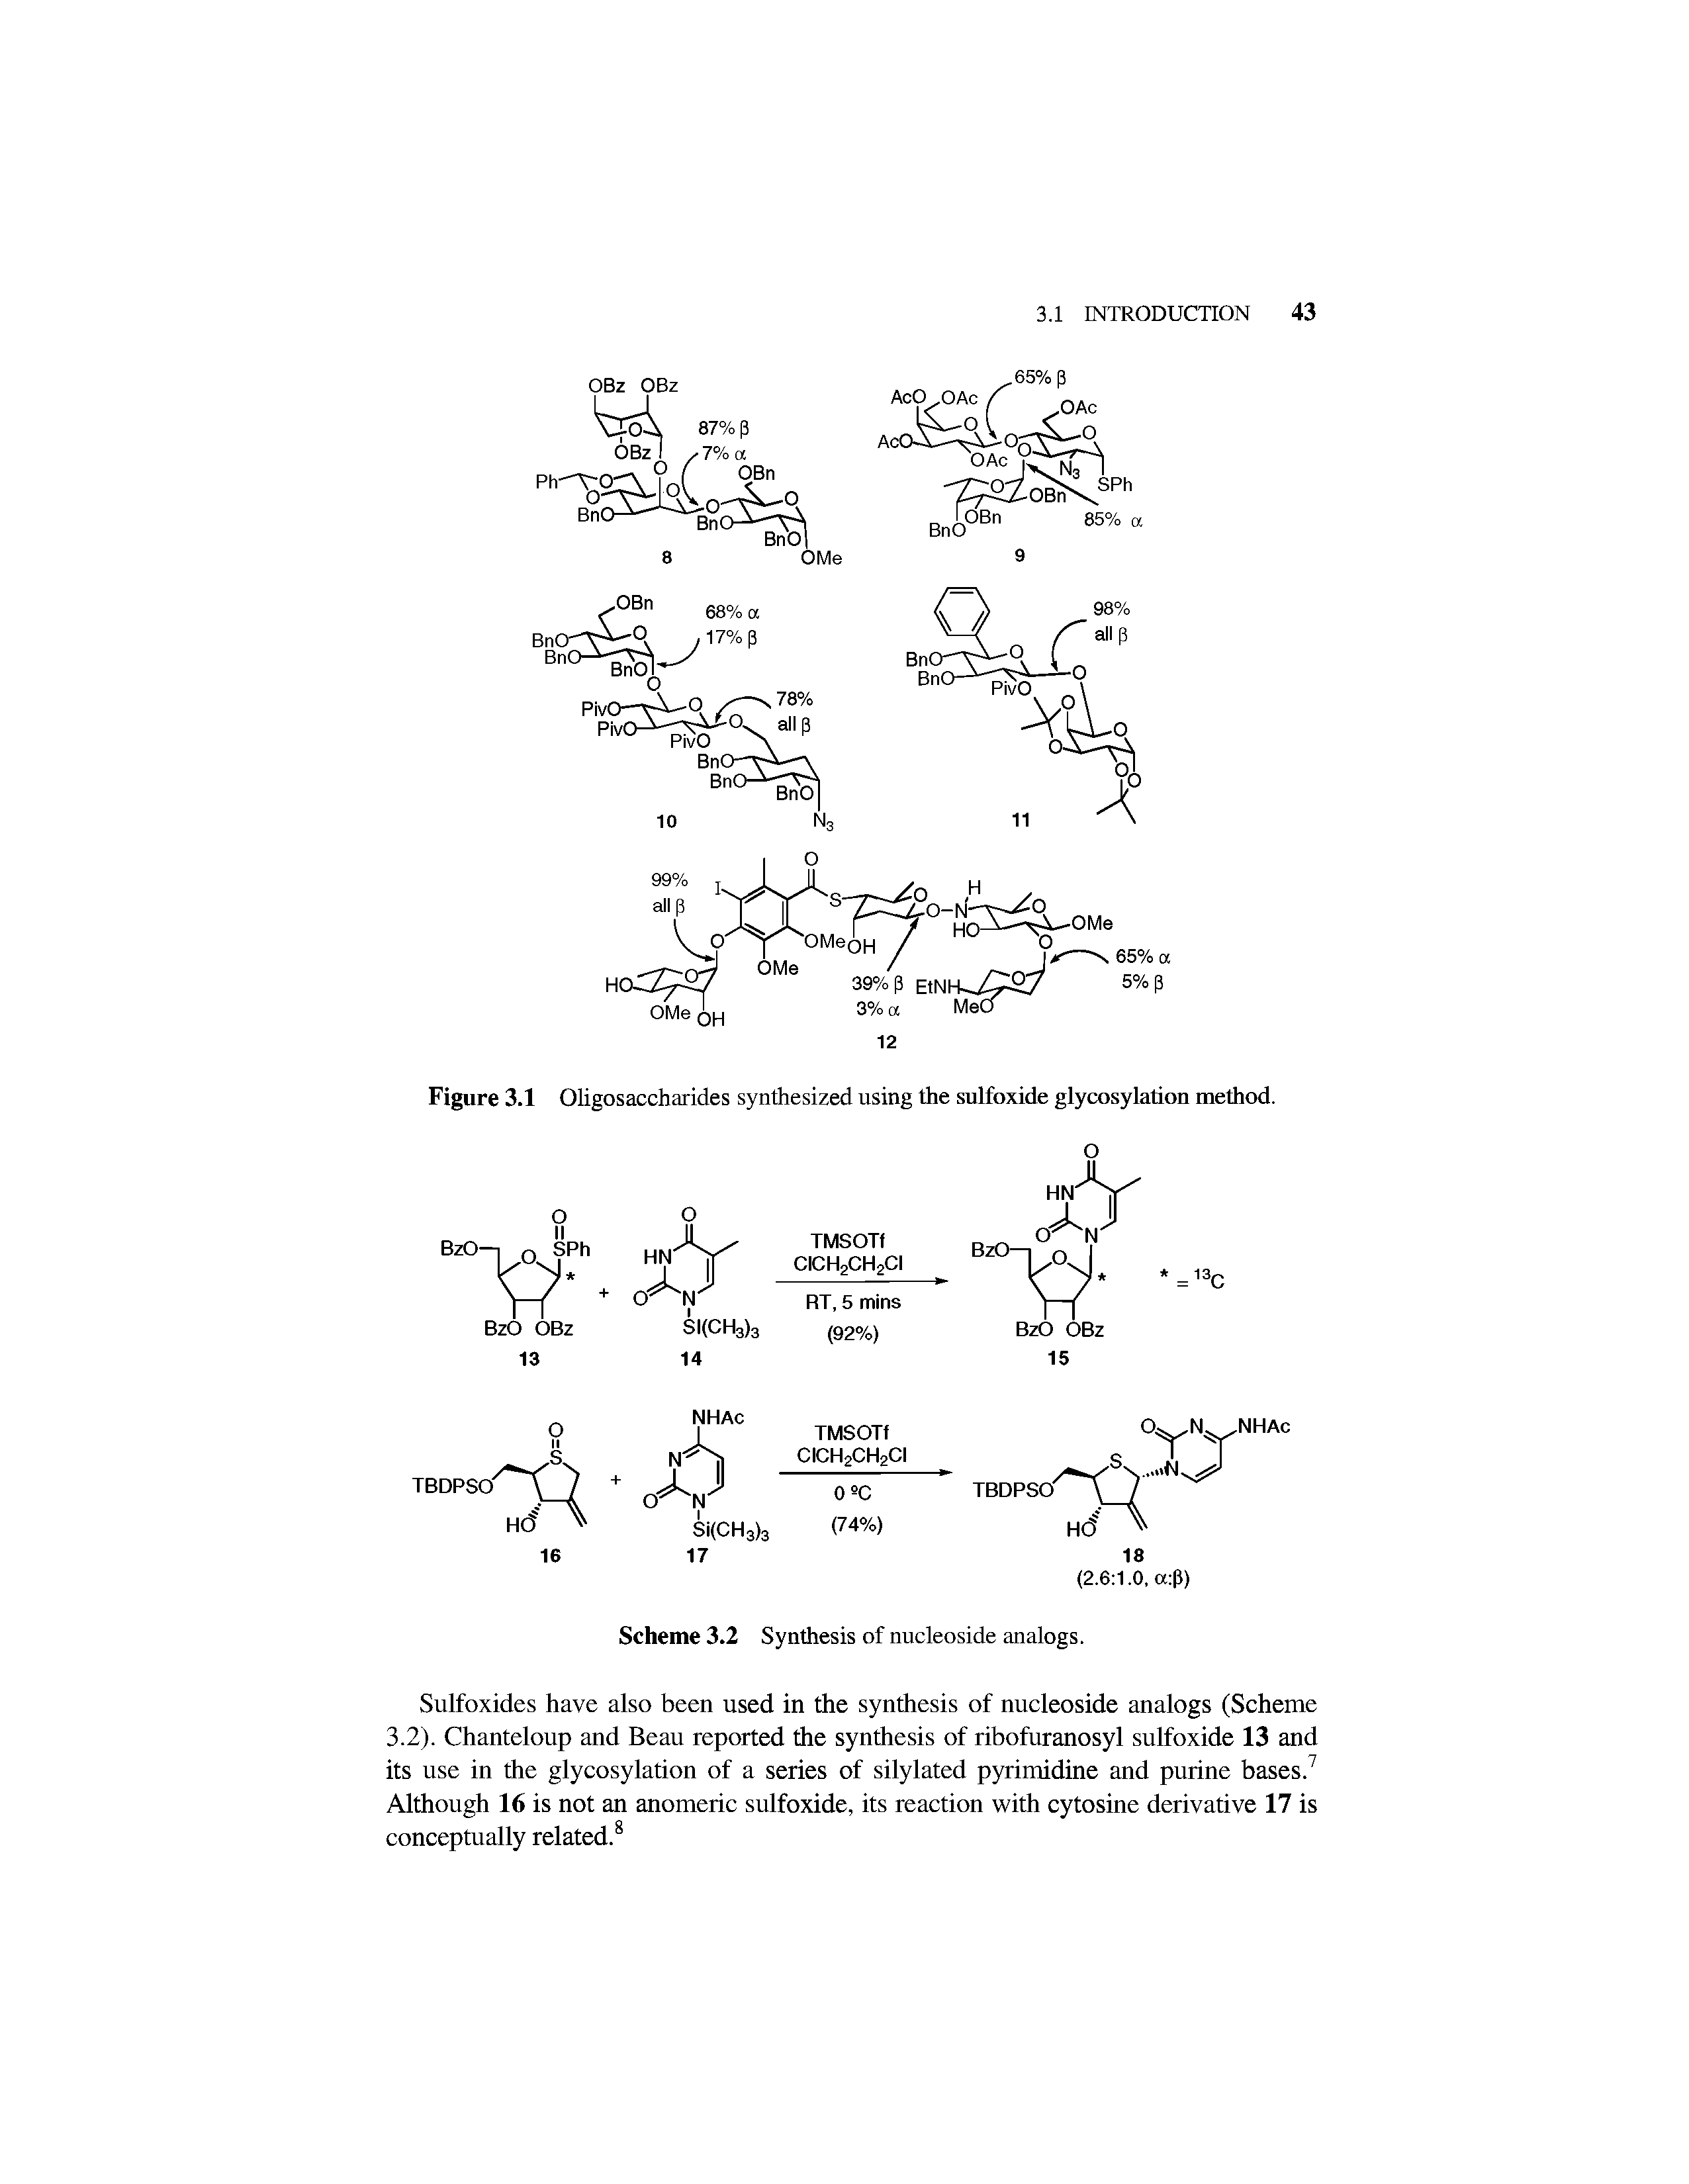 Figure 3.1 Oligosaccharides synthesized using the sulfoxide glycosylation method.